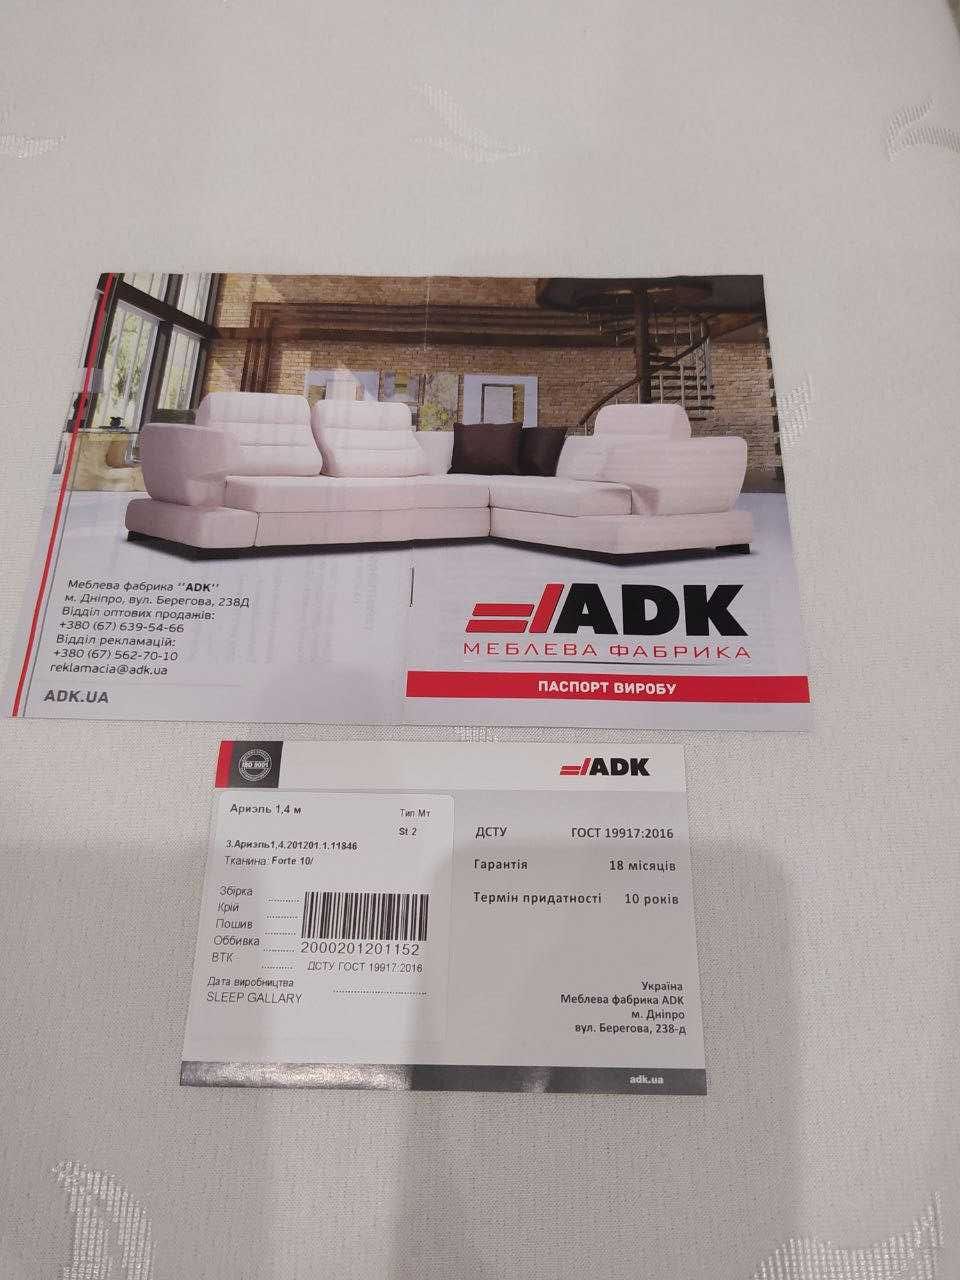 Продаю кровать фирмы АDK 1,4*2,0 м